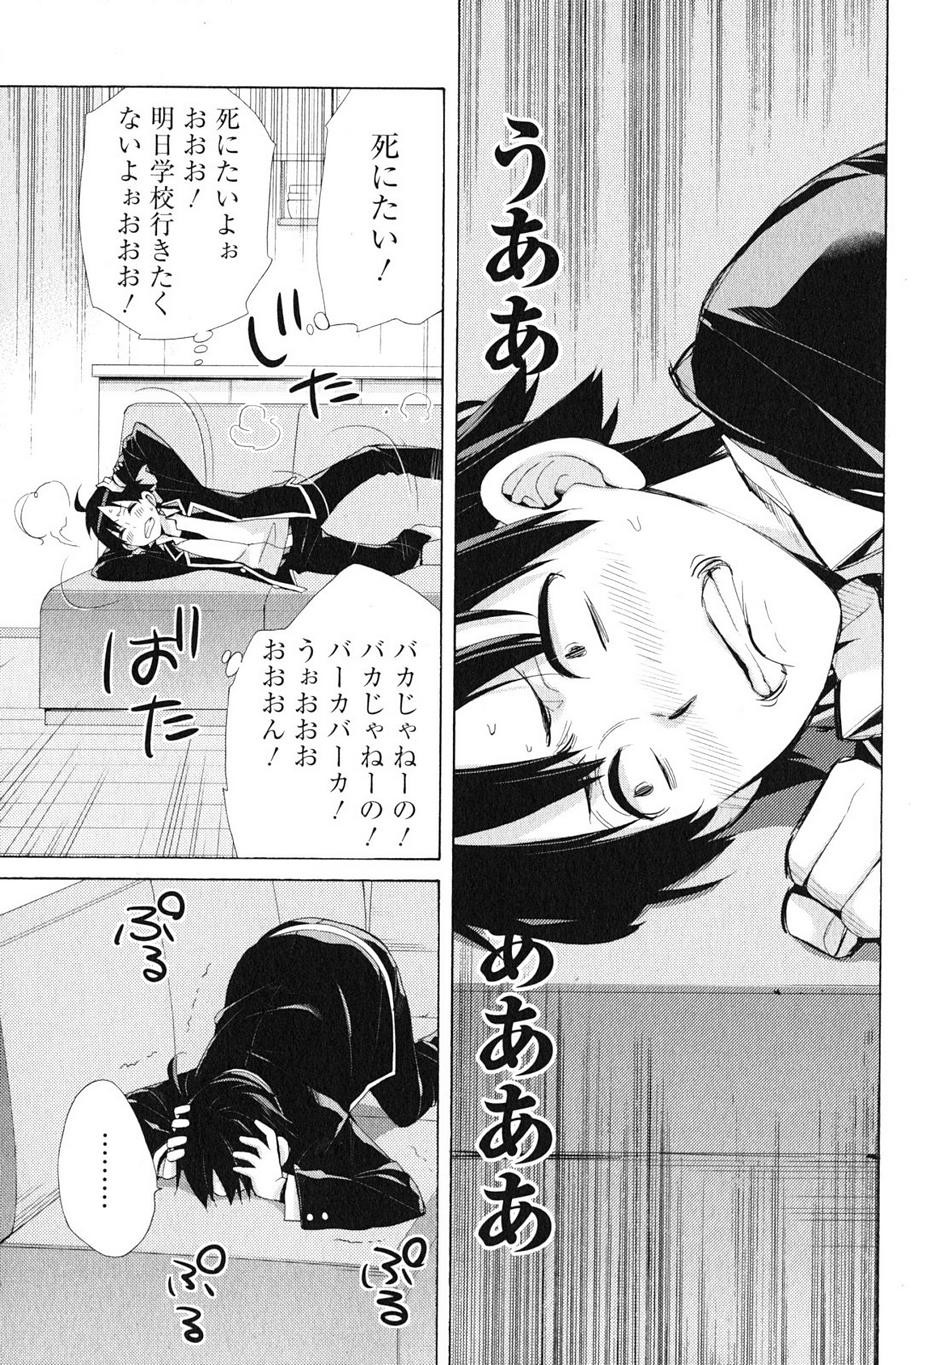 Yahari Ore no Seishun Rabukome wa Machigatte Iru. - Monologue - Chapter 41 - Page 3